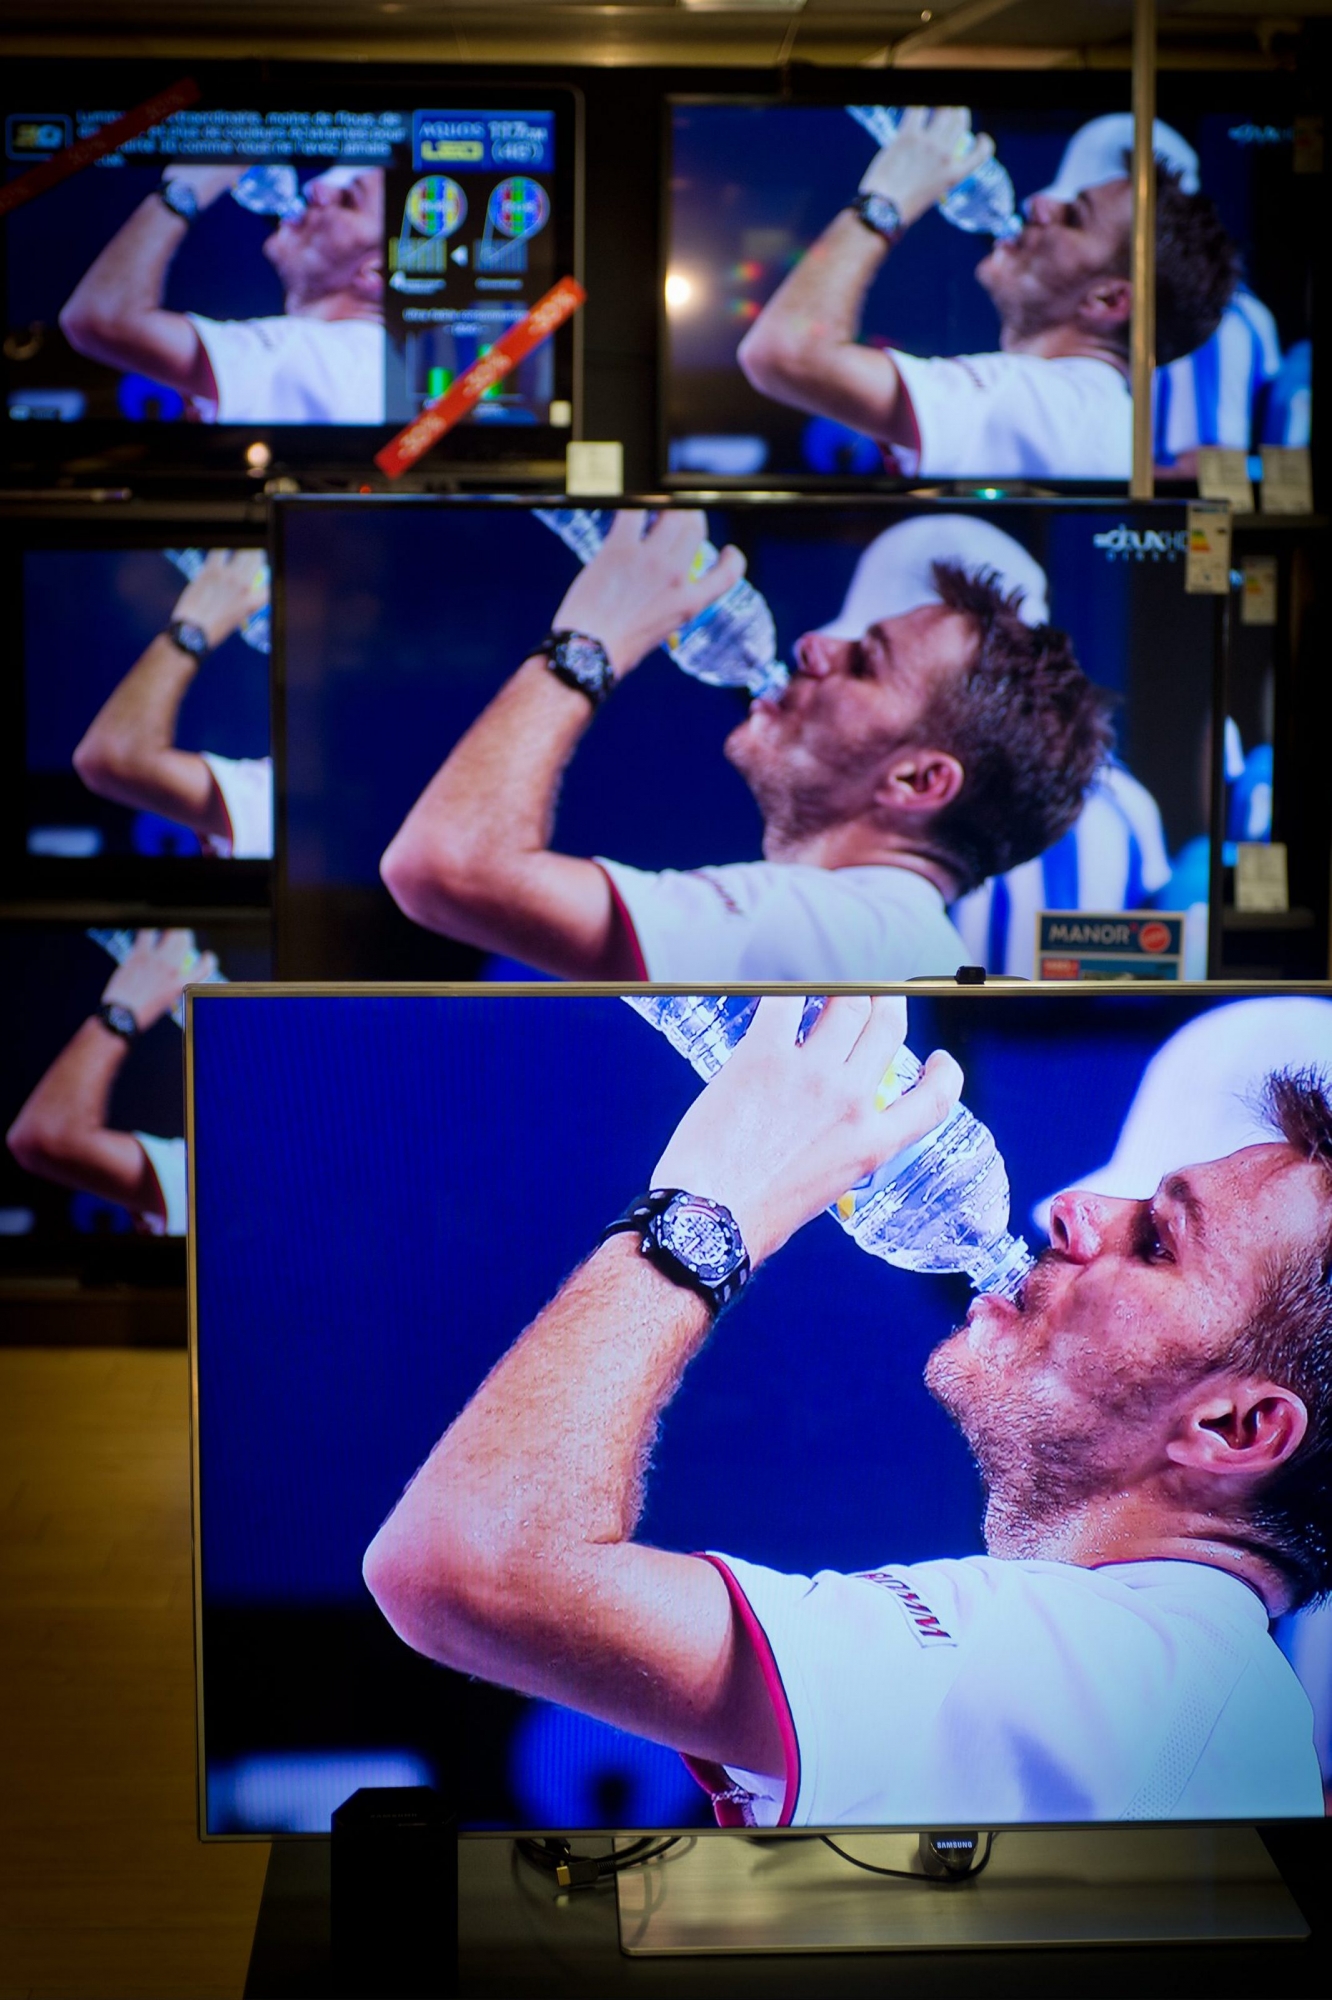 Multiples écrans TV (chez Manor) pour apprécier la victoire en demi-finale de Stanislas Wawrinka à l'US Open d'Australie.

Photo Lib/Alain Wicht, Fribourg, le 23.01.2014 Stanislas Wawrinka